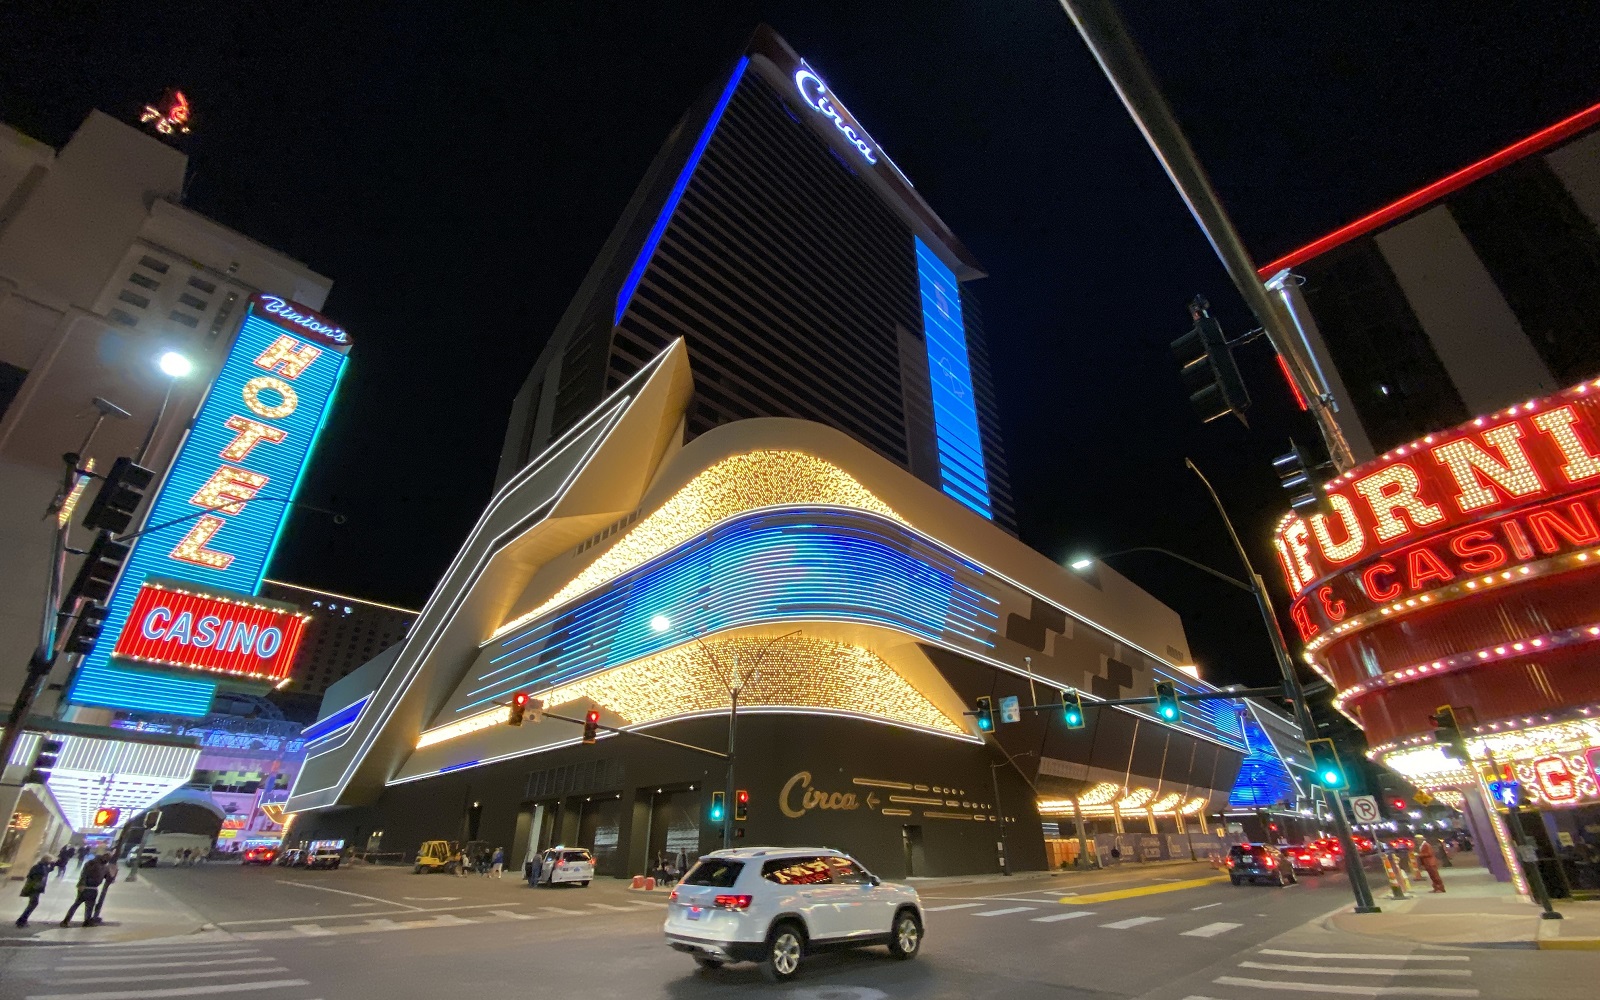 Circa Resort & Casino - Full Opening Day Tour